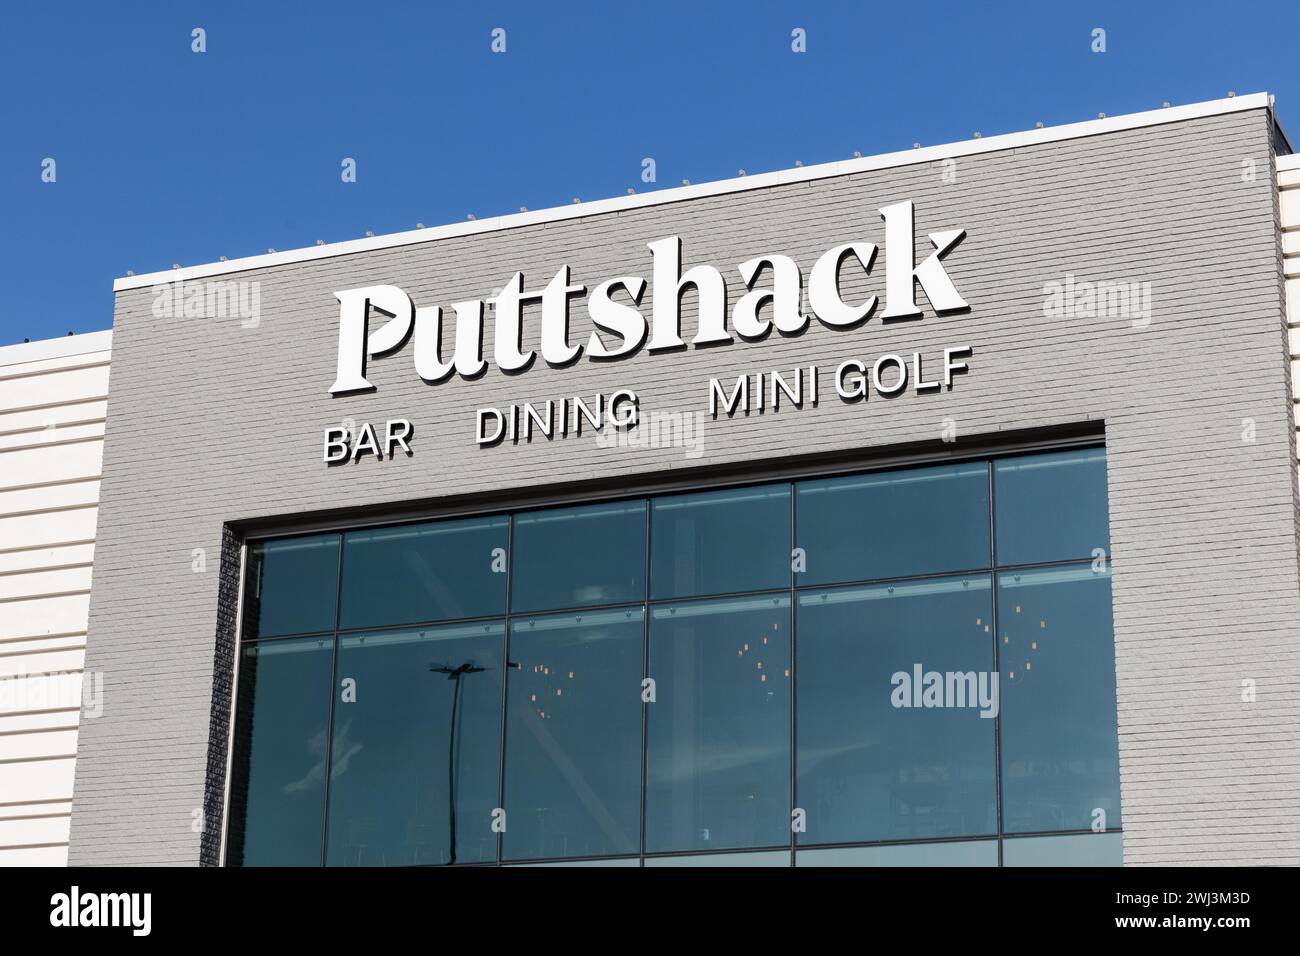 Puttshack ist ein Indoor-Minigolfunternehmen, das Waffenspiele und Speisen und Getränke anbietet. Stockfoto